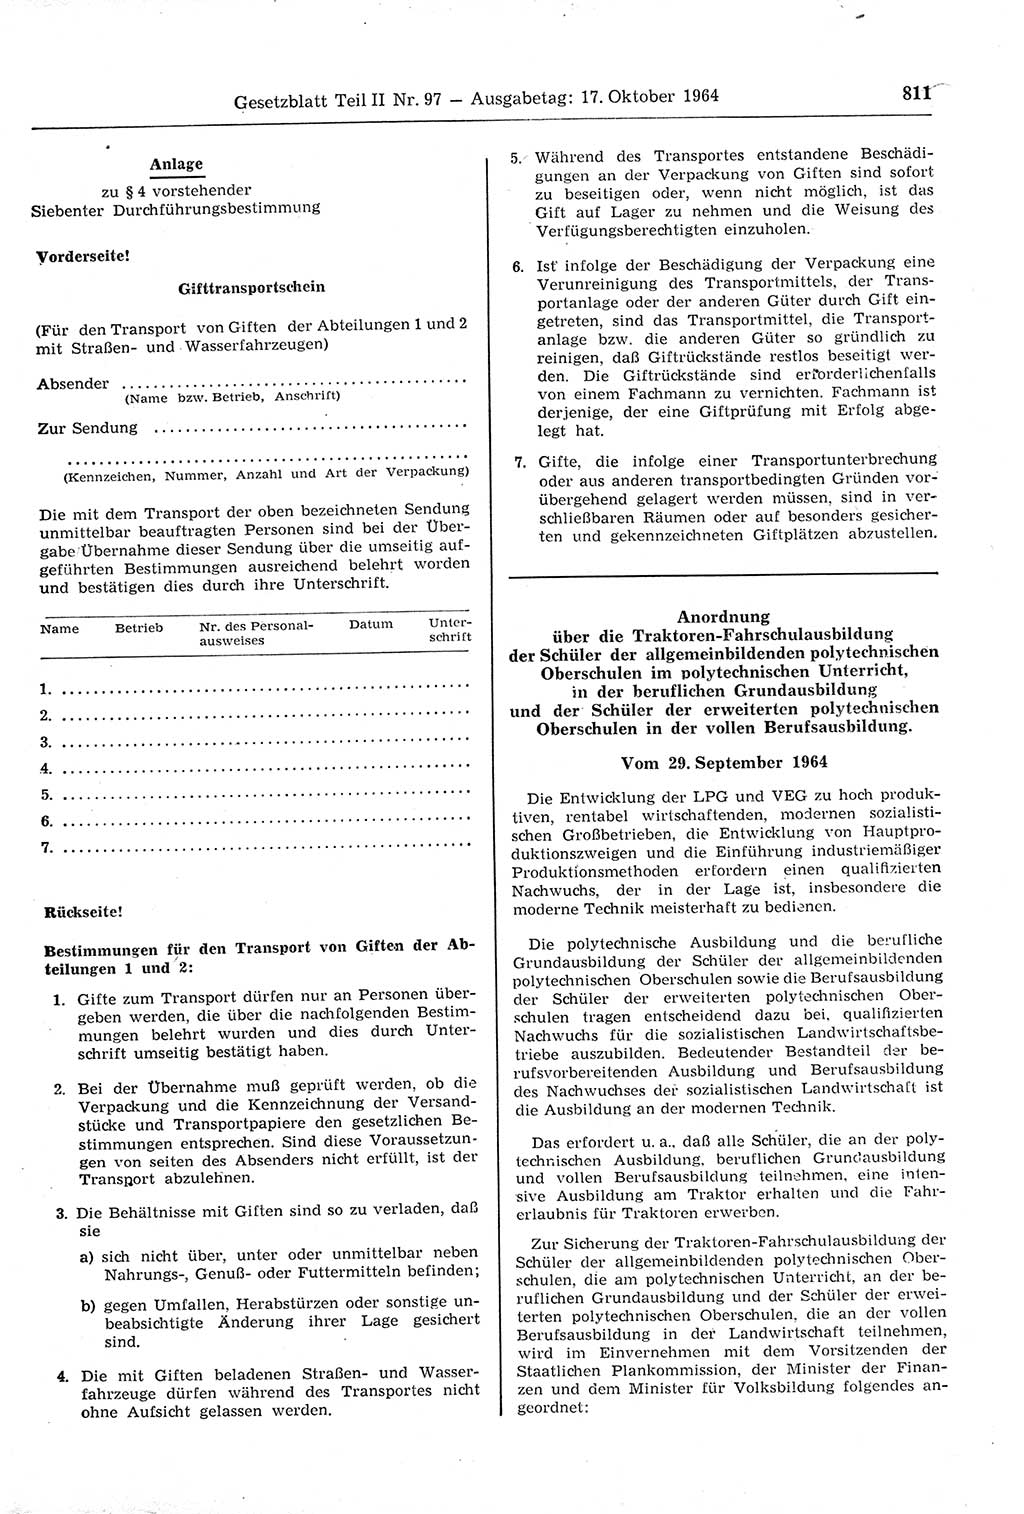 Gesetzblatt (GBl.) der Deutschen Demokratischen Republik (DDR) Teil ⅠⅠ 1964, Seite 811 (GBl. DDR ⅠⅠ 1964, S. 811)